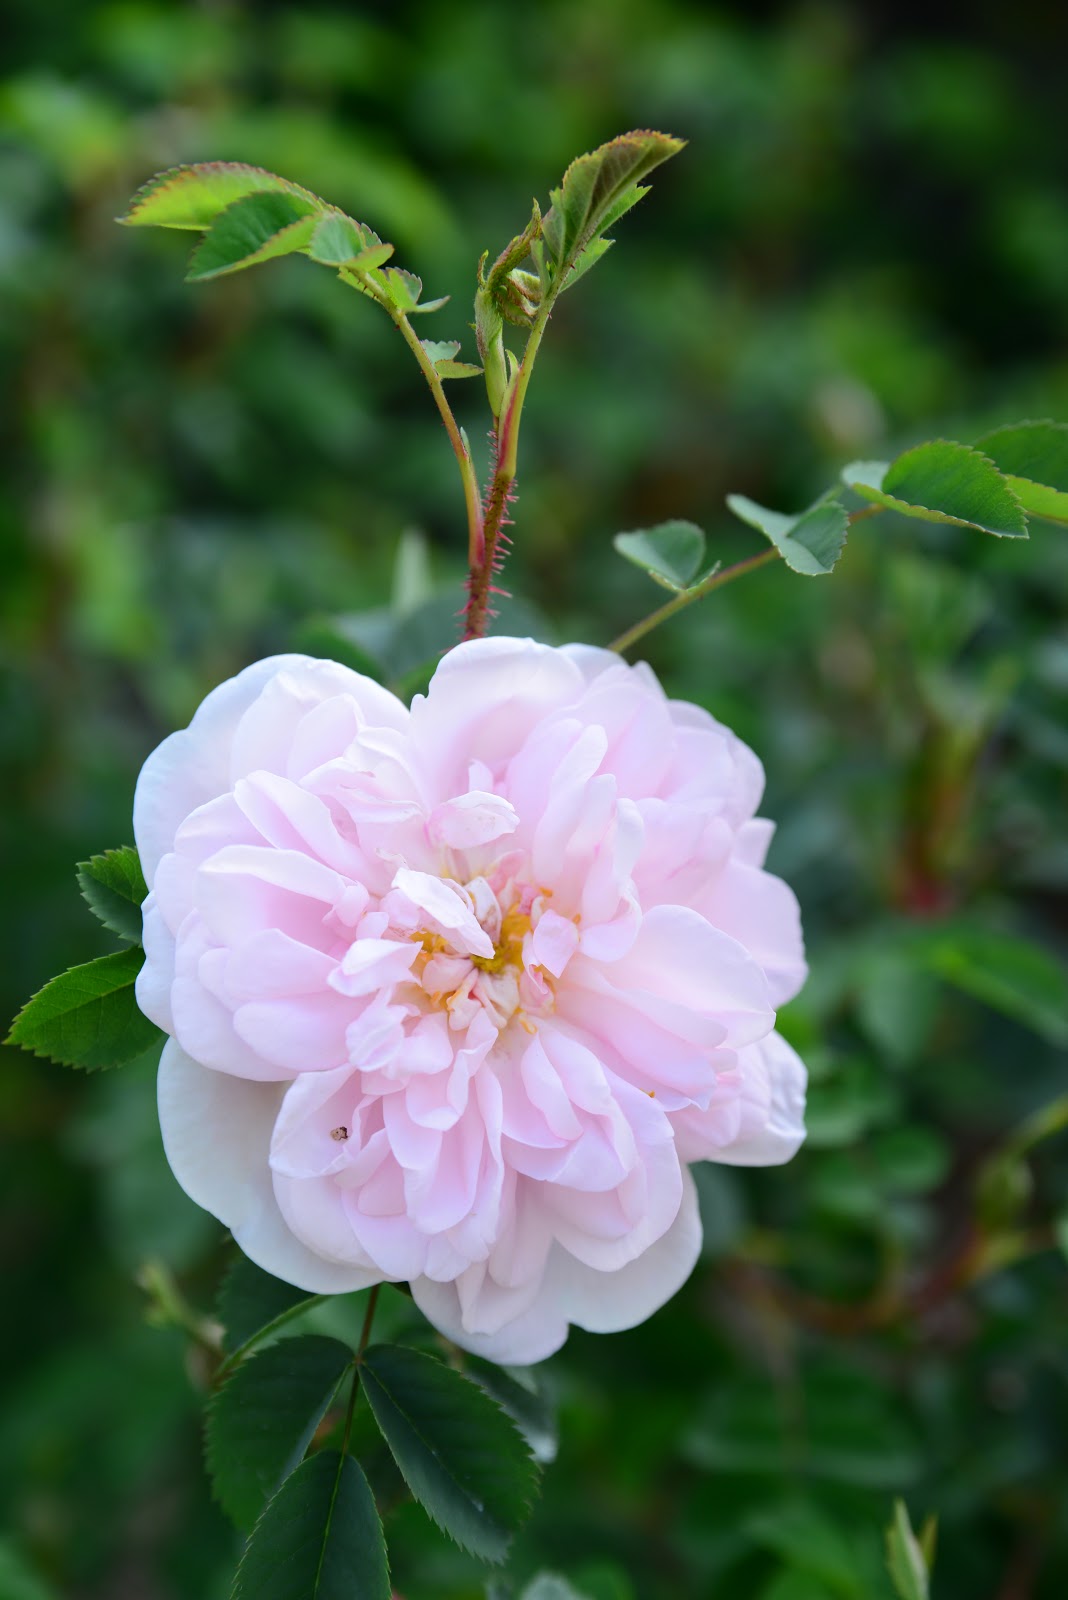 広島市植物公園ブログ バラの開花状況 5月2日時点